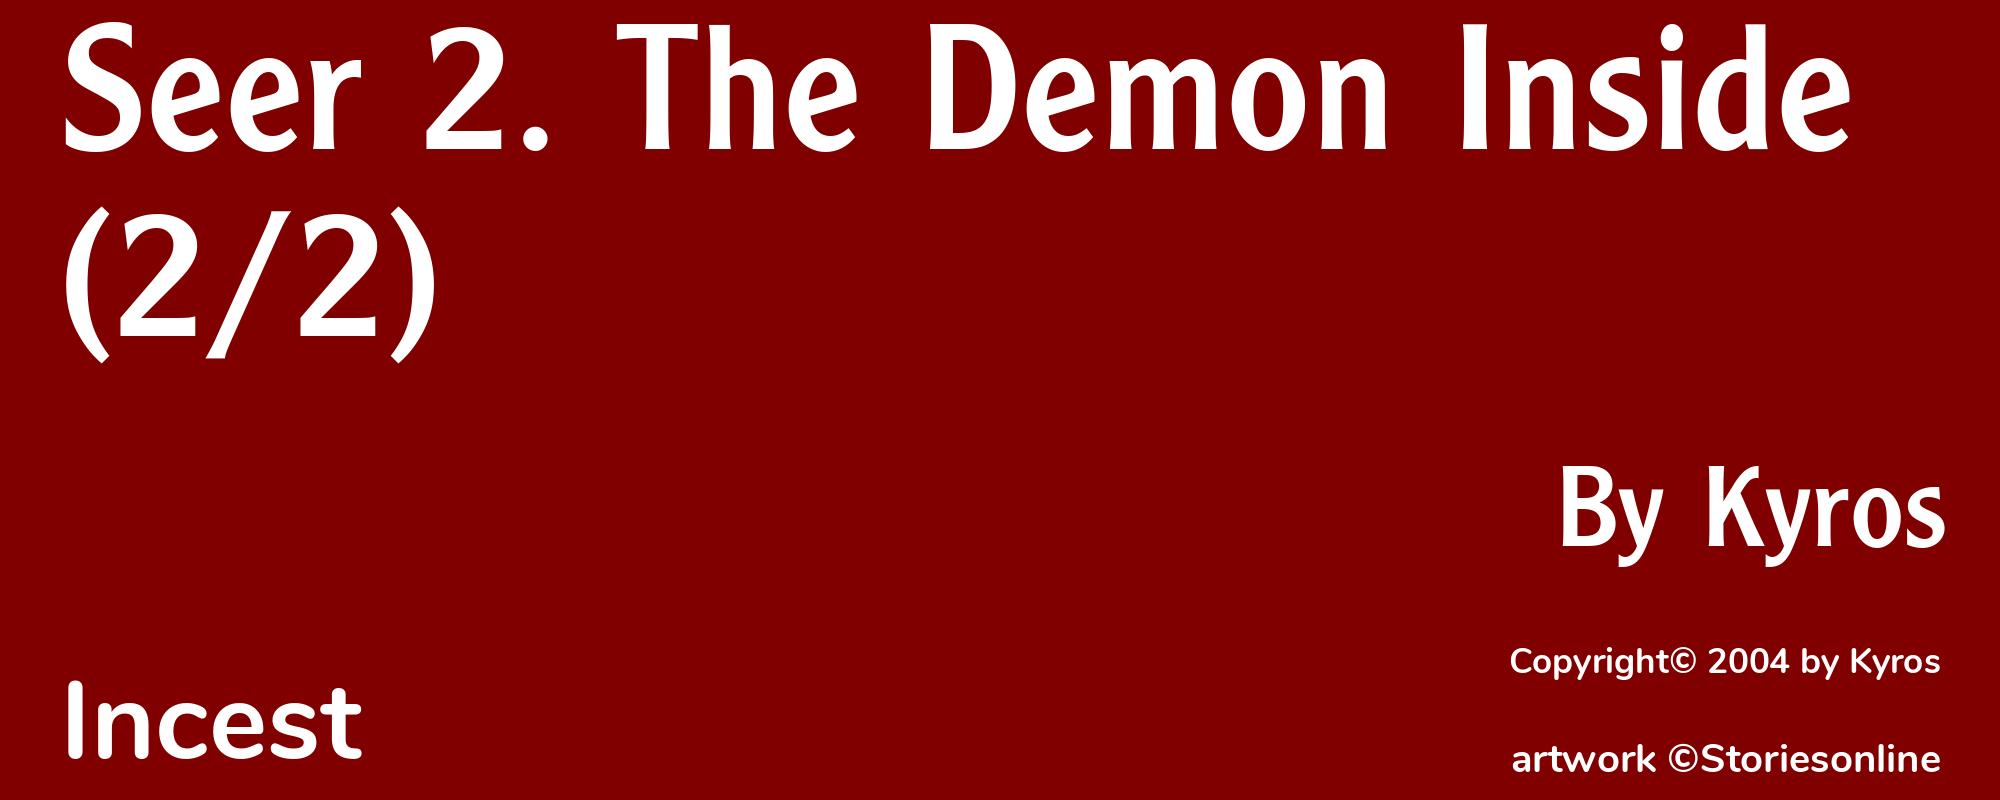 Seer 2. The Demon Inside (2/2) - Cover